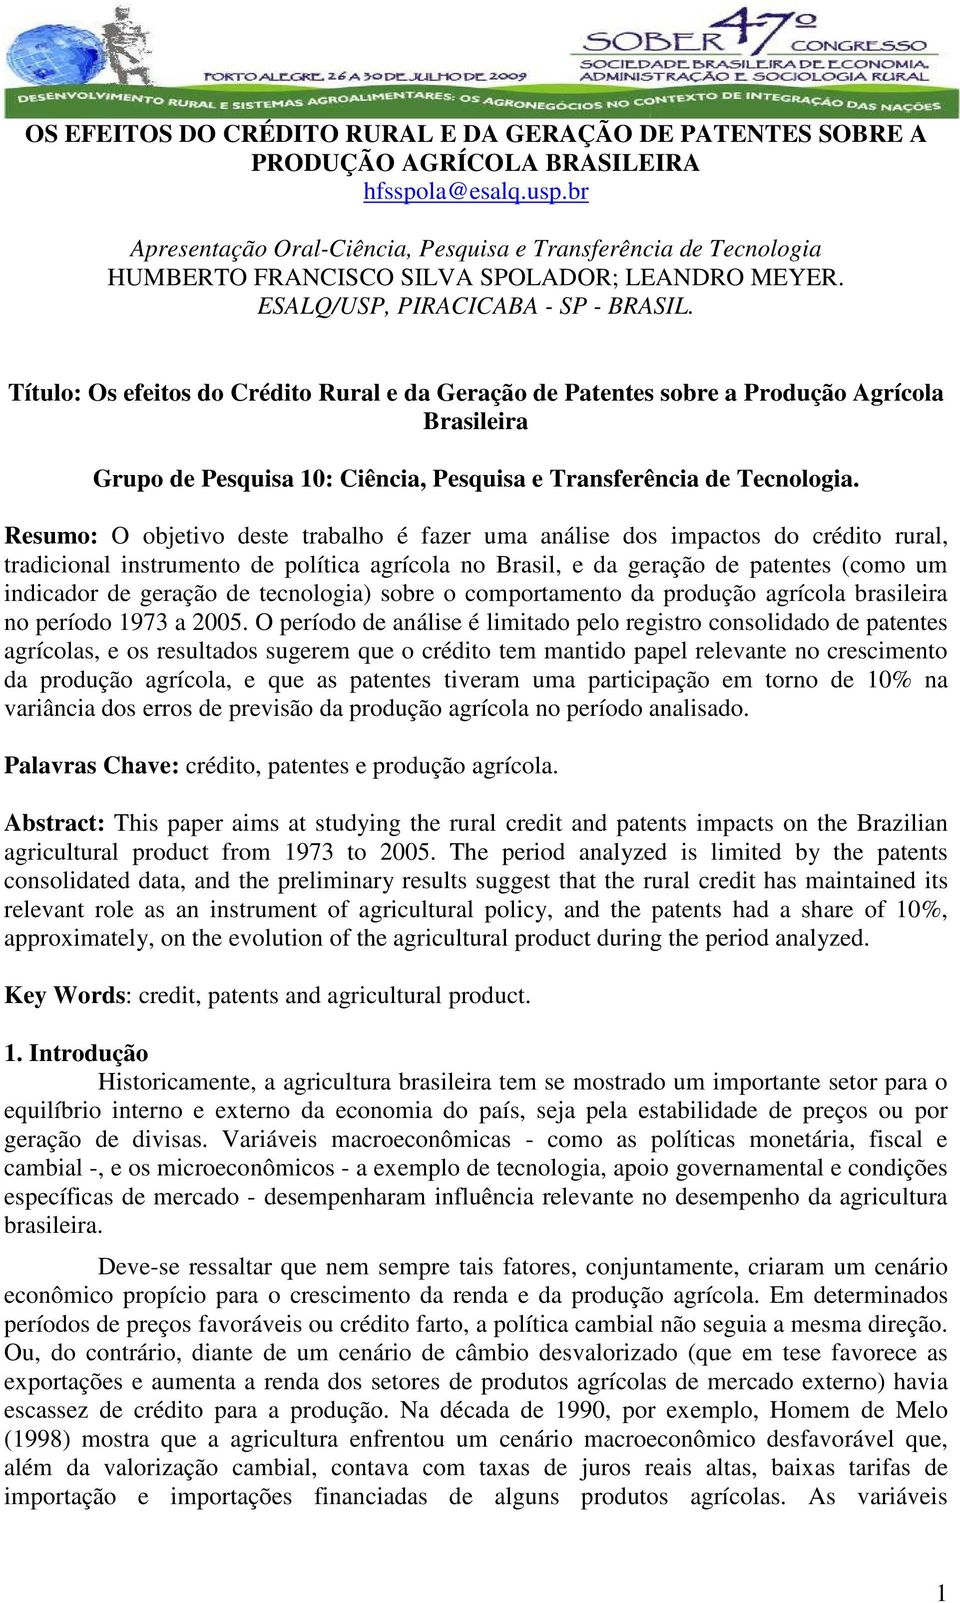 Tíulo: Os efeios do Crédio Rural e da Geração de Paenes sobre a Produção Agrícola Brasileira Grupo de Pesquisa : Ciência, Pesquisa e Transferência de Tecnologia.